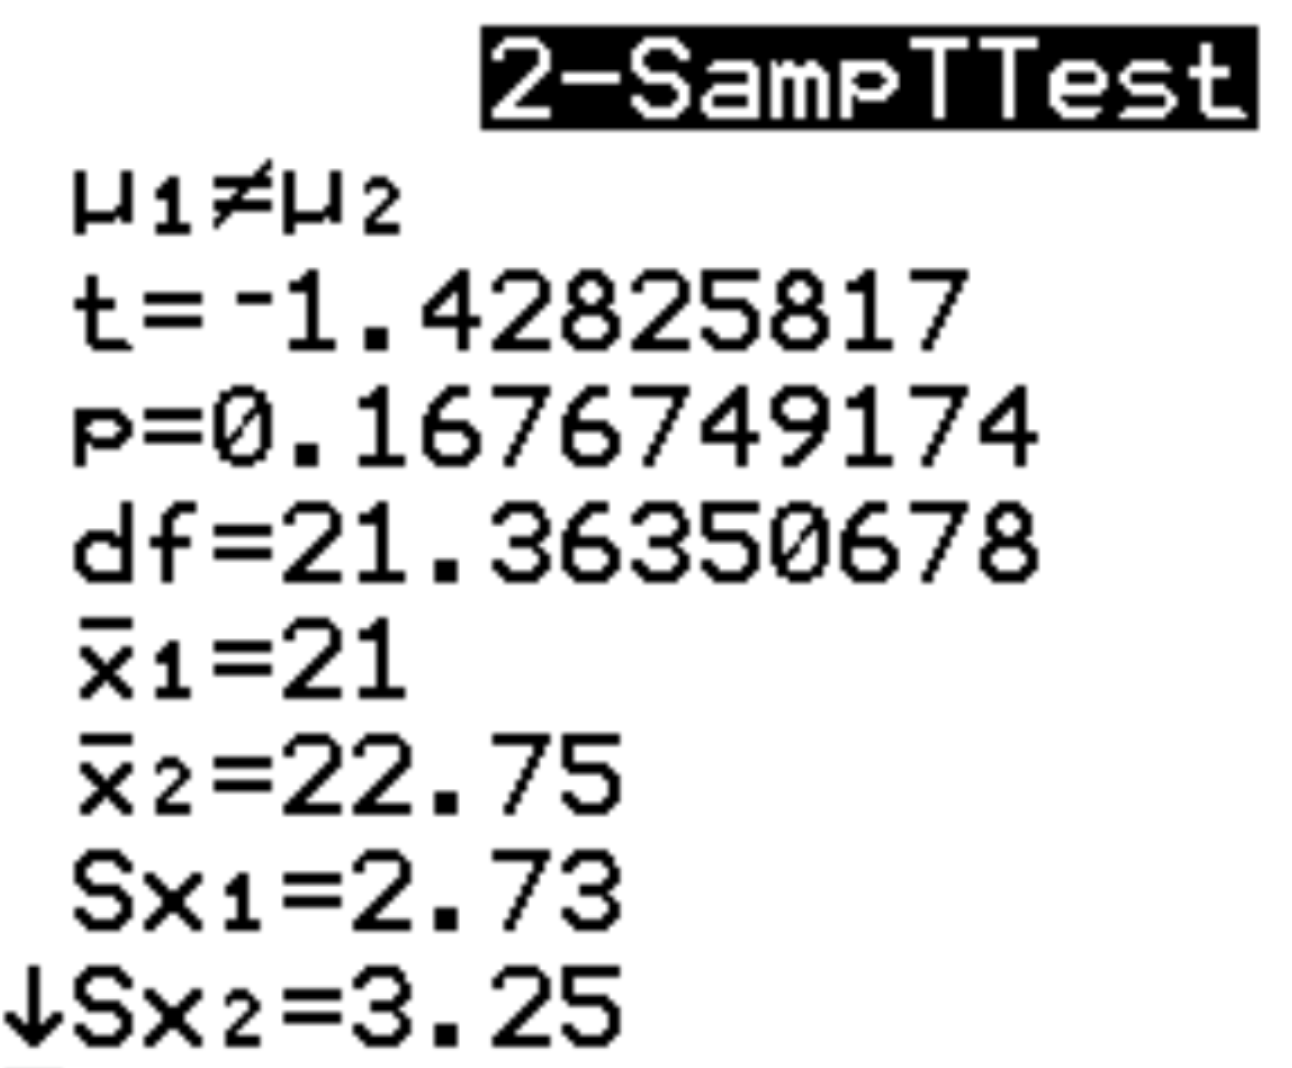 Sortie de deux échantillons de test t sur une calculatrice TI-84